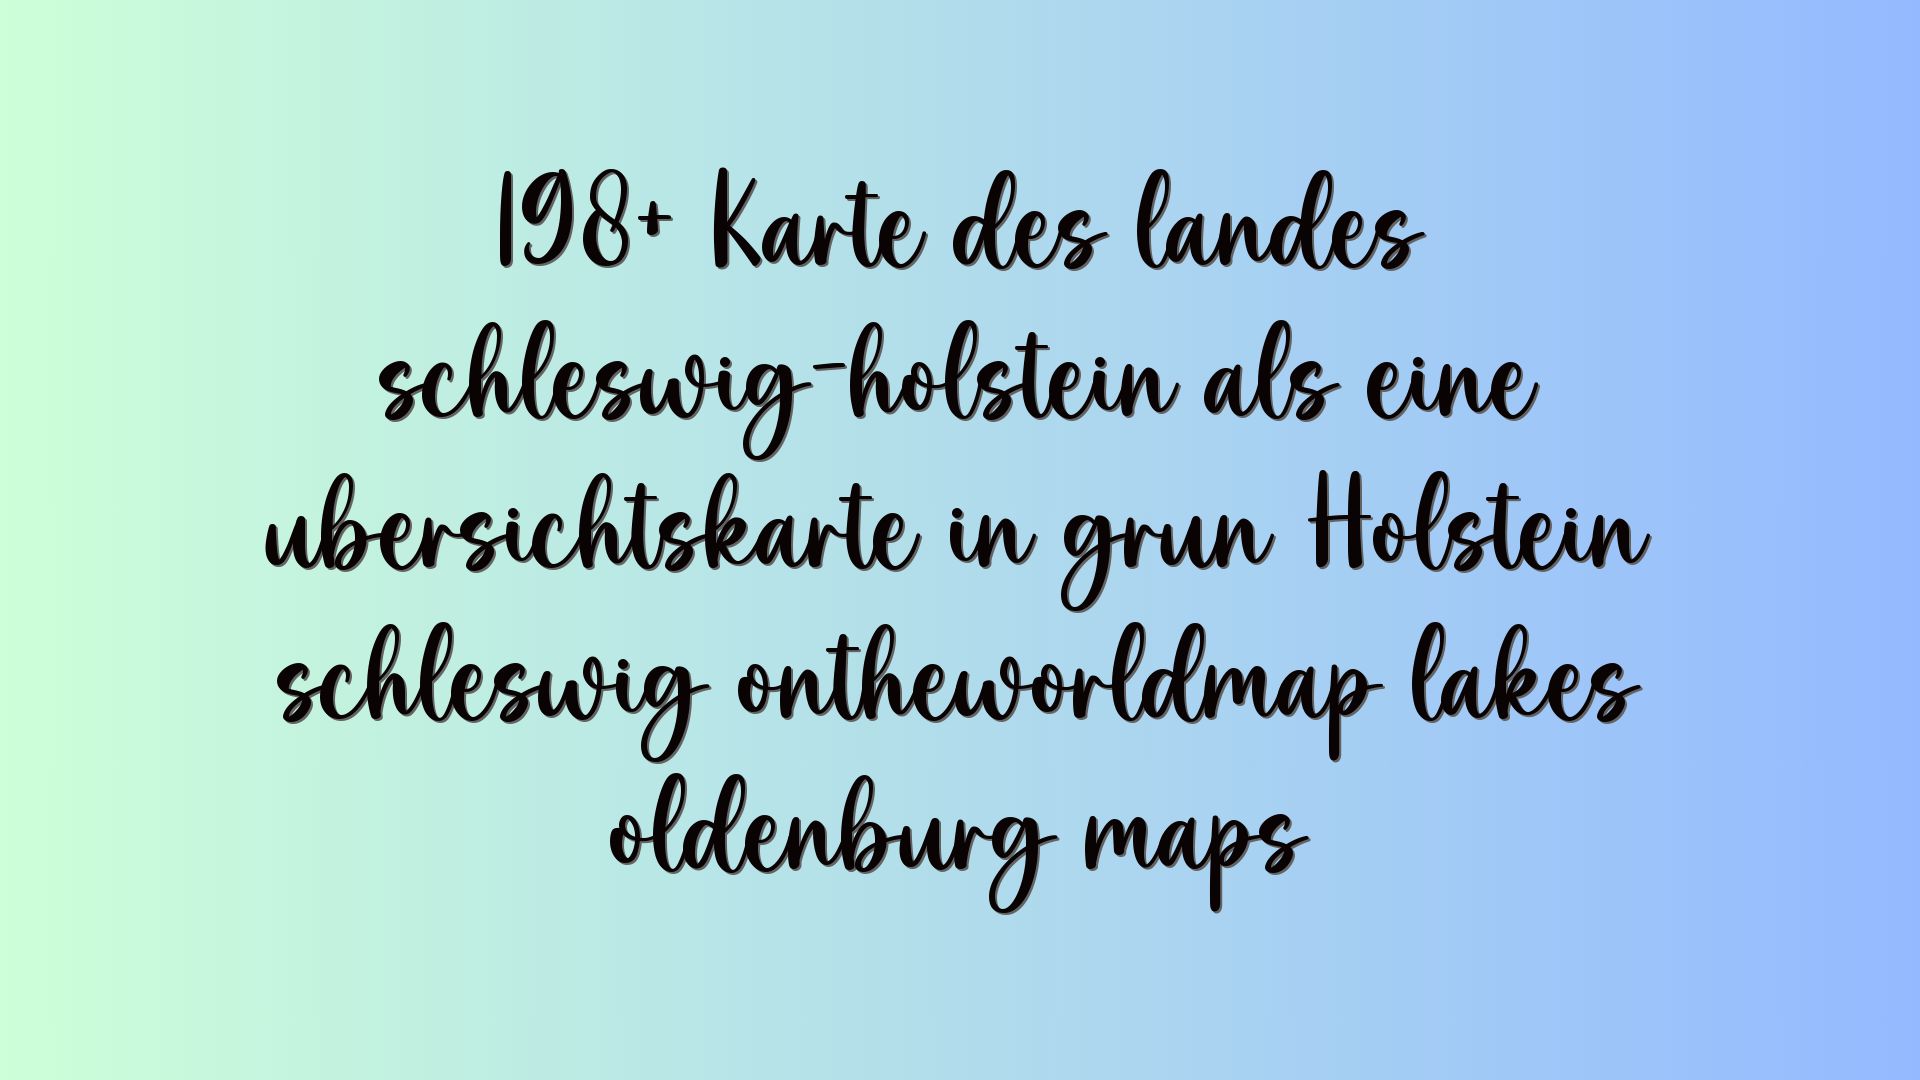 198+ Karte des landes schleswig-holstein als eine übersichtskarte in grün Holstein schleswig ontheworldmap lakes oldenburg maps